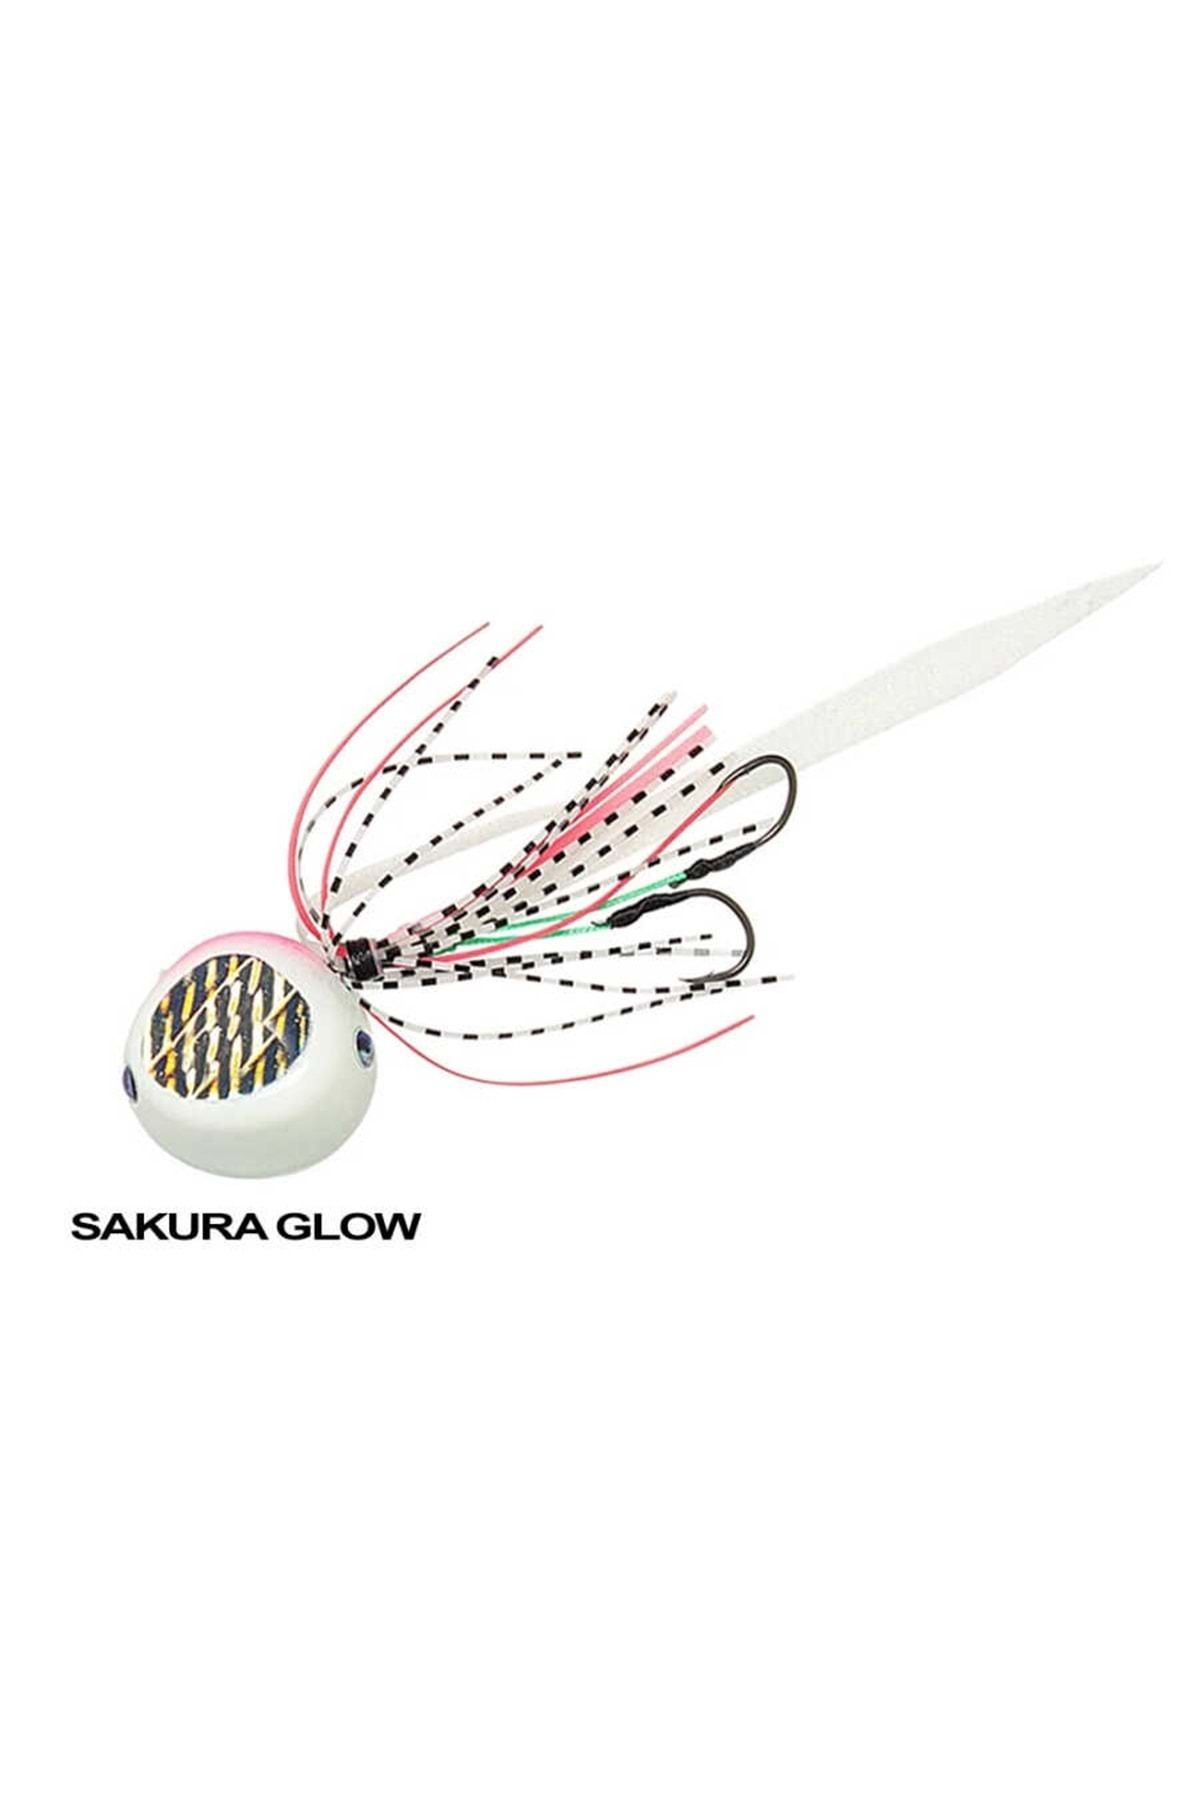 DAIWA Kohga Bayrubber 120gr - Sakura Glow